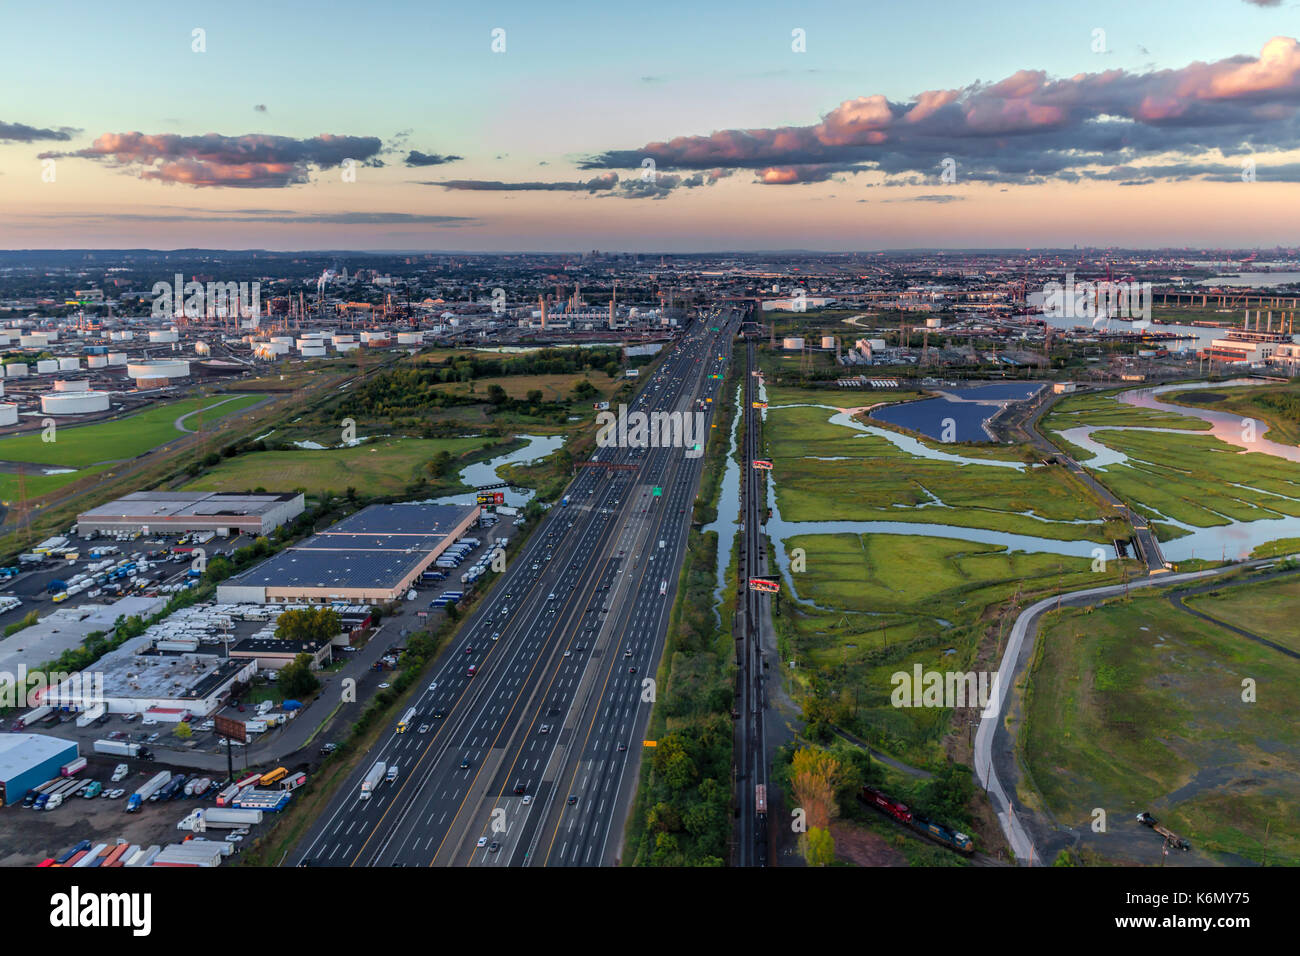 New Jersey Turnpike Luftansicht - Luftbild mit dem NJ Turnpike. Das Gold Oil Terminal in Linden, NJ können auch gesehen werden. Stockfoto